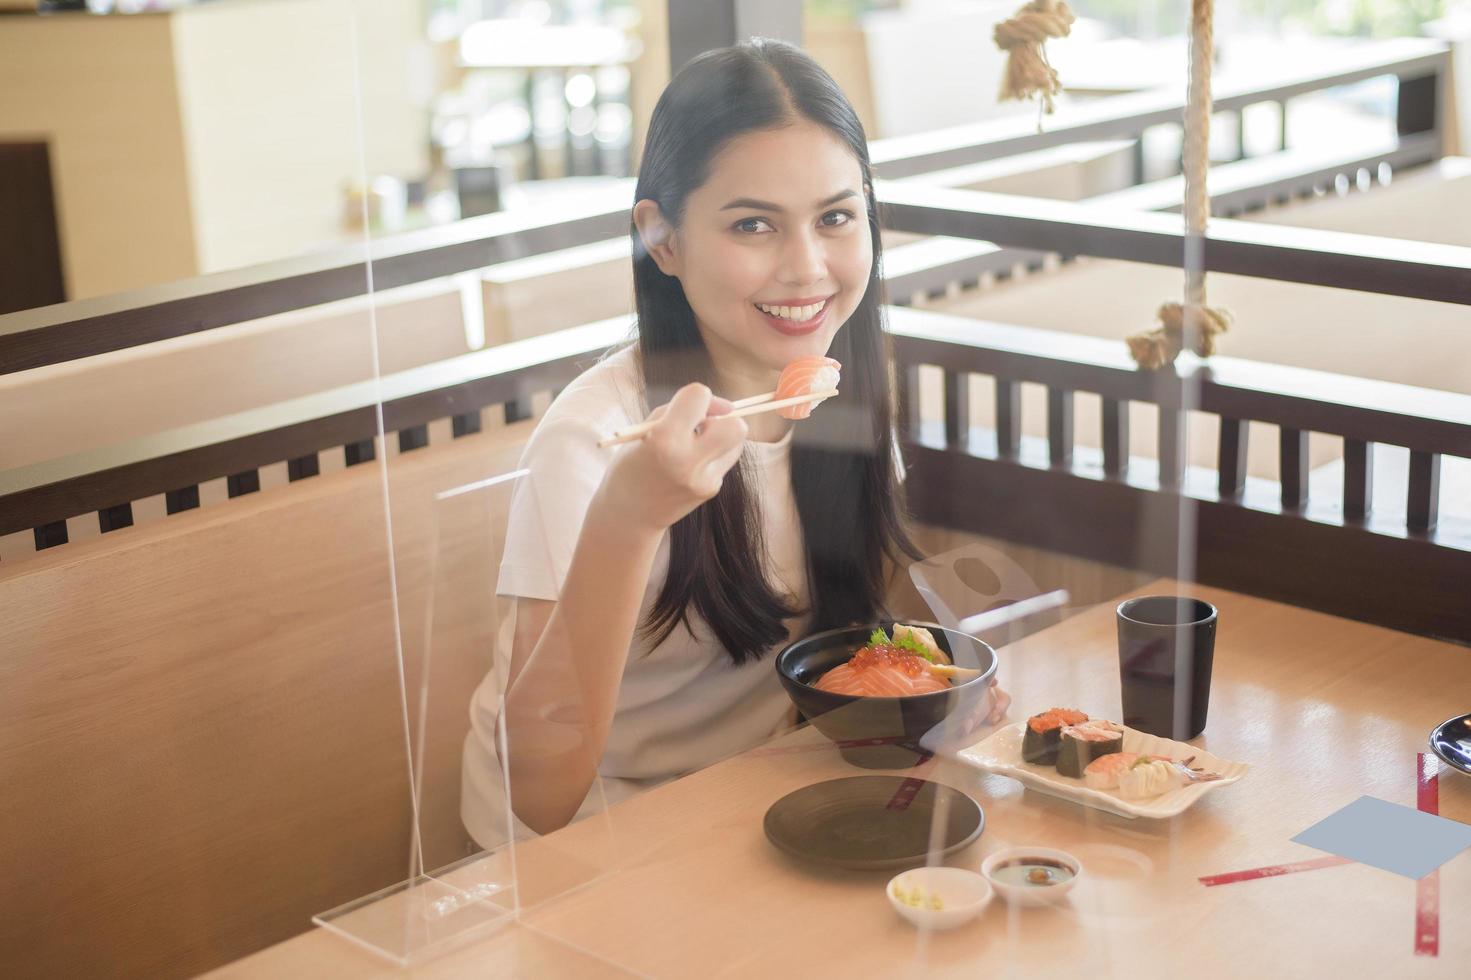 la mujer está comiendo en un restaurante con protocolo de distanciamiento social mientras se encierra la ciudad debido a la pandemia del coronavirus foto